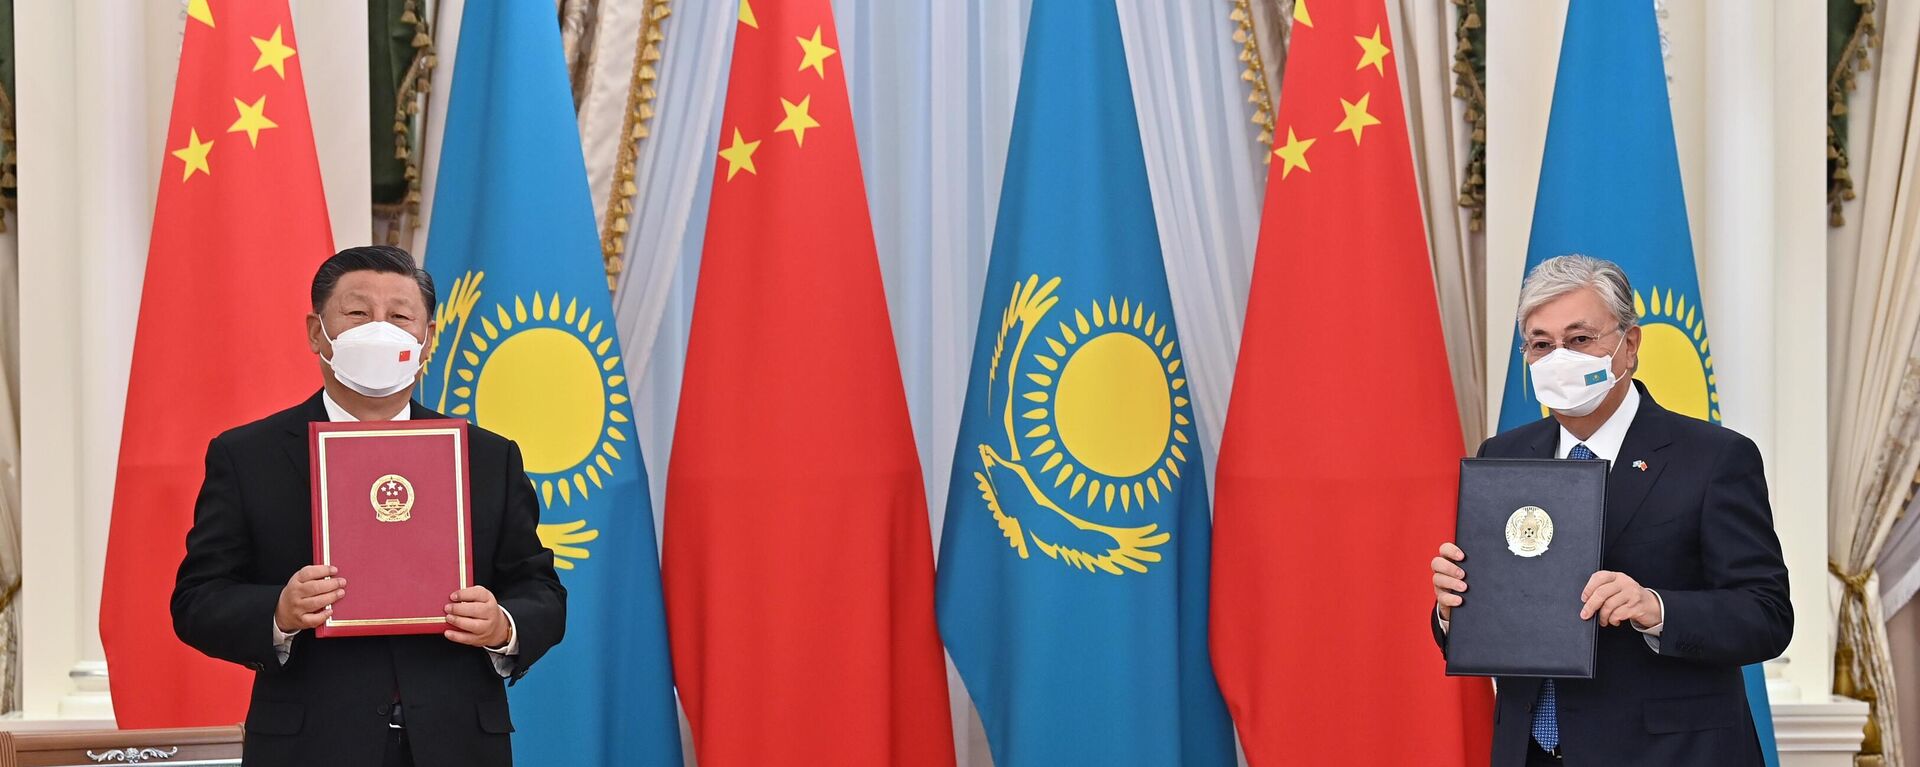  Главы государств подписали Совместное заявление по случаю 30-летия установления дипломатических отношений между Казахстаном и Китаем - Sputnik Казахстан, 1920, 14.09.2022